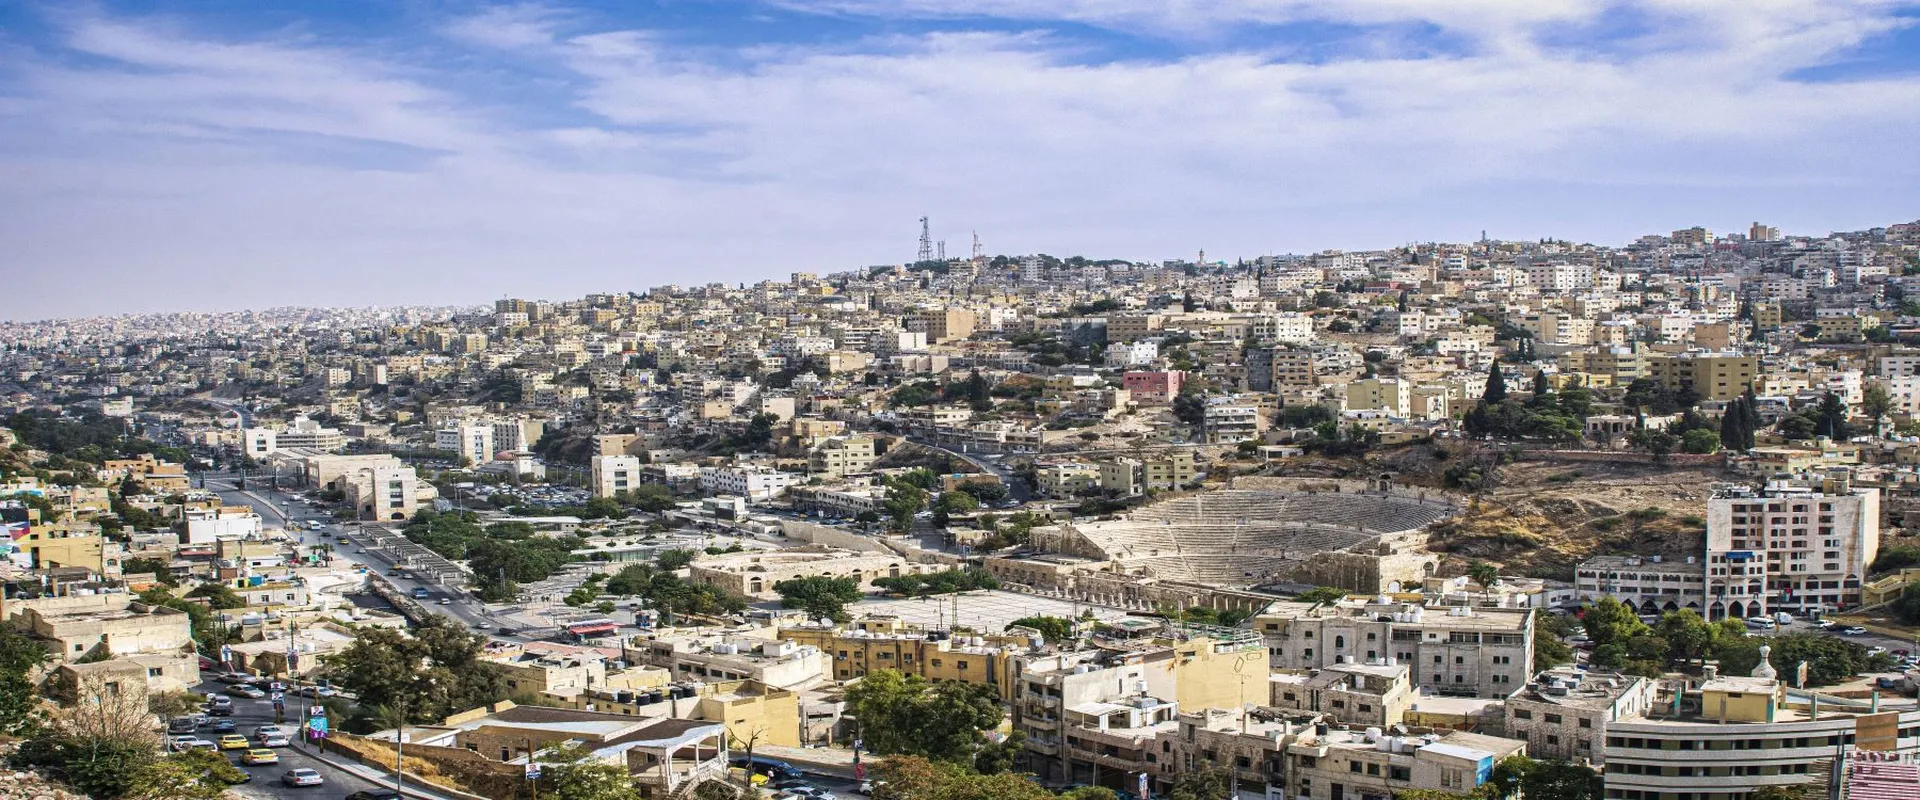 Explore Al Balad – Downtown Amman 